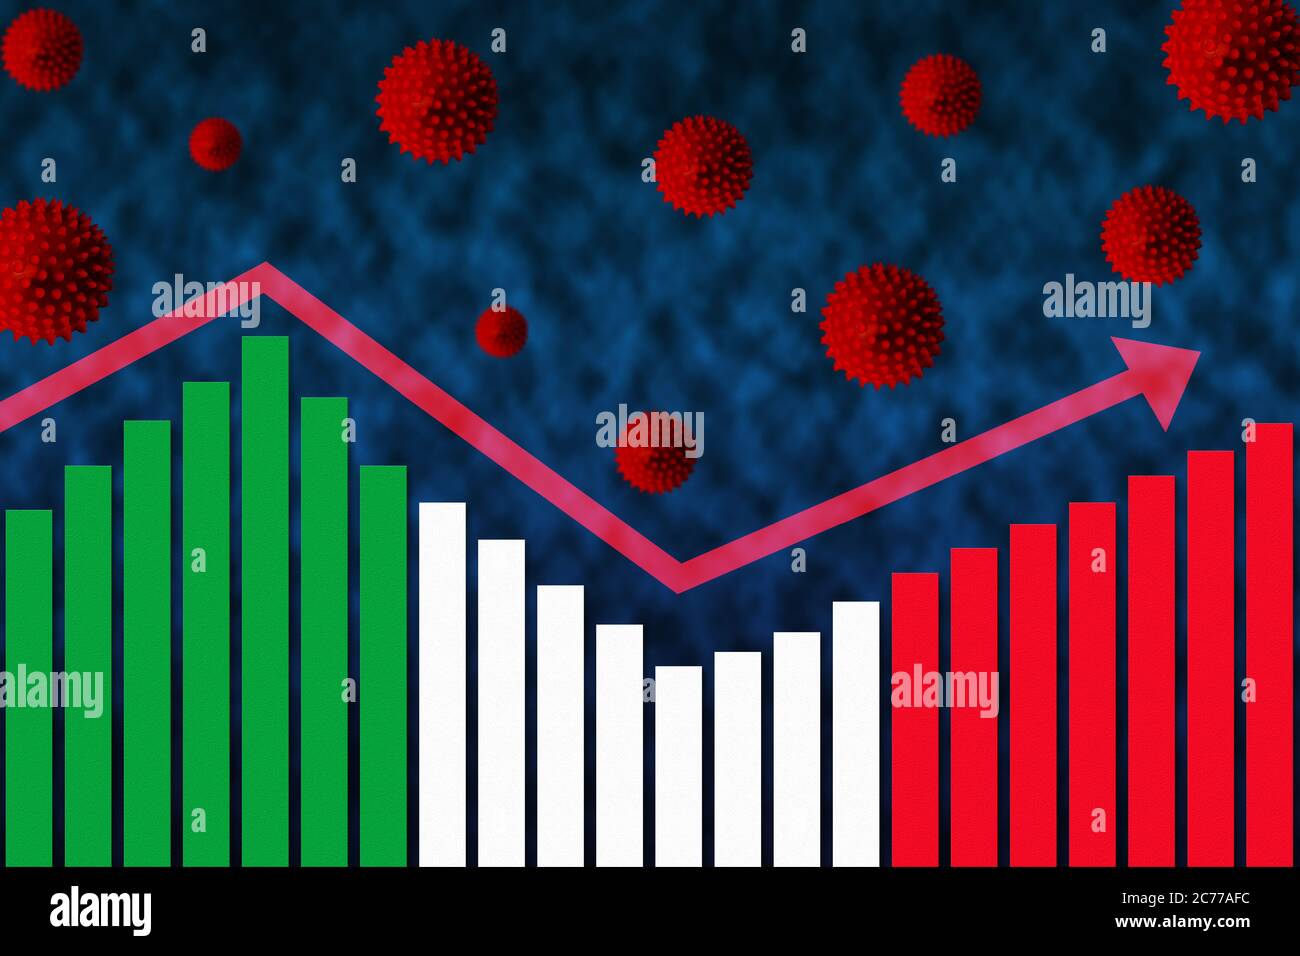 Bandera de Italia en el gráfico de barras concepto de COVID-19 coronavirus casos de infección de segunda onda después de la primera onda ilustrado por el gráfico y los símbolos de virus de la popa Foto de stock